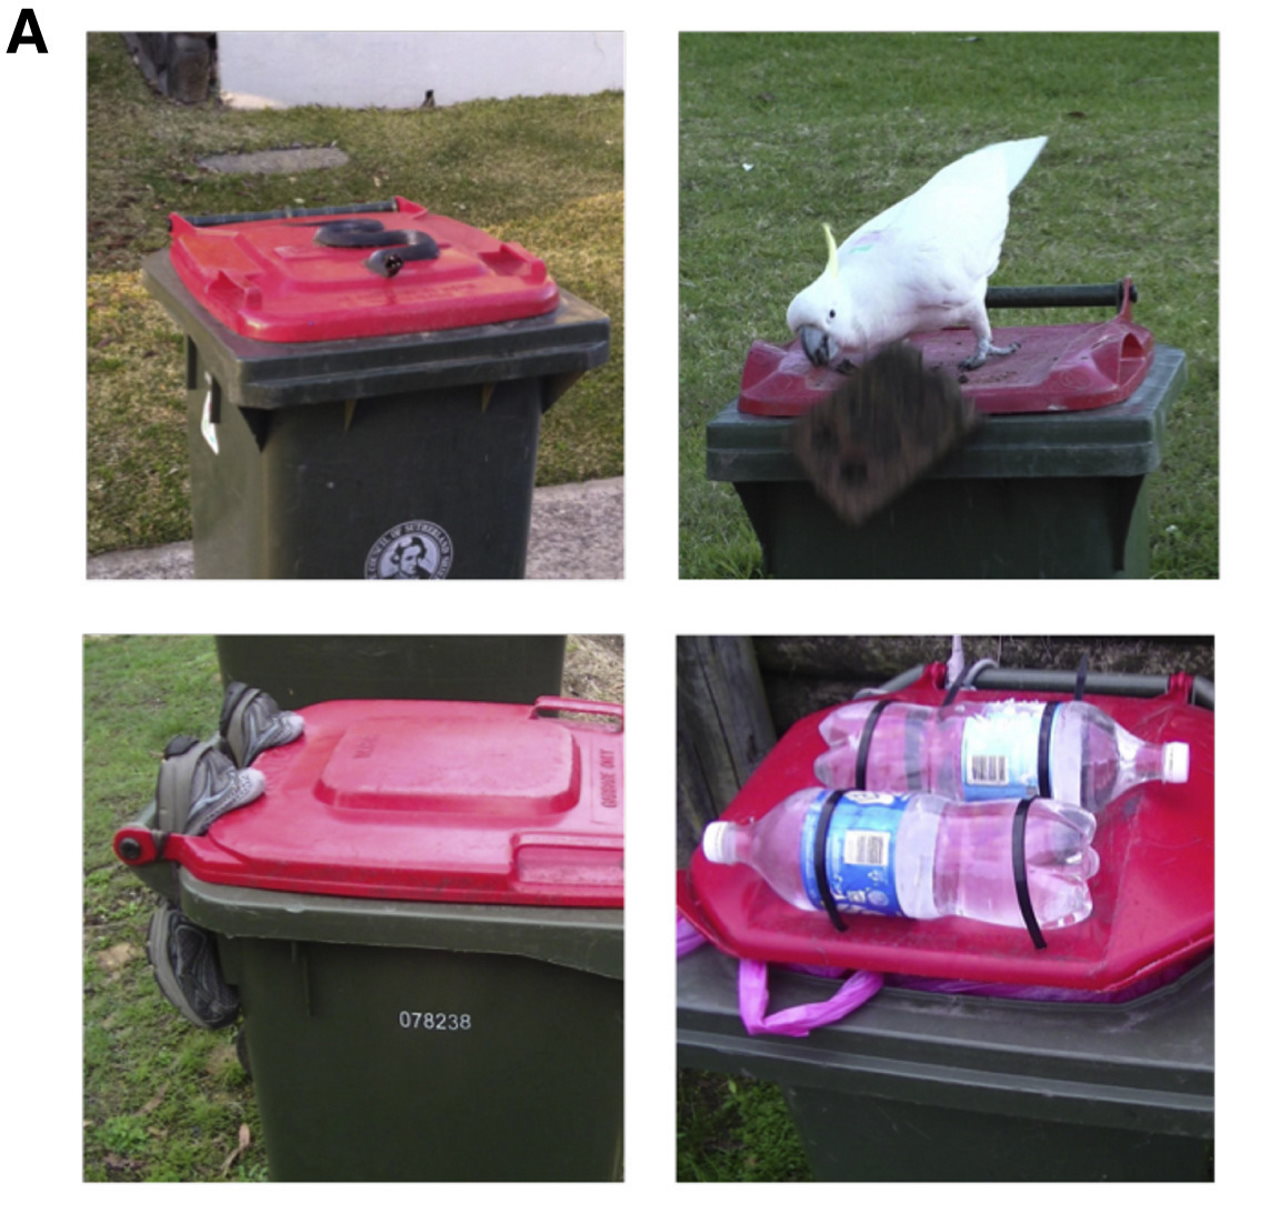 Частина способів, якими люди намагаються захистити сміттєві баки від папуг. Не завжди успішно, як можна бачити на другому фото.&amp;nbsp;Barbara C. Klump et al. /&amp;nbsp;Current Biology, 2022